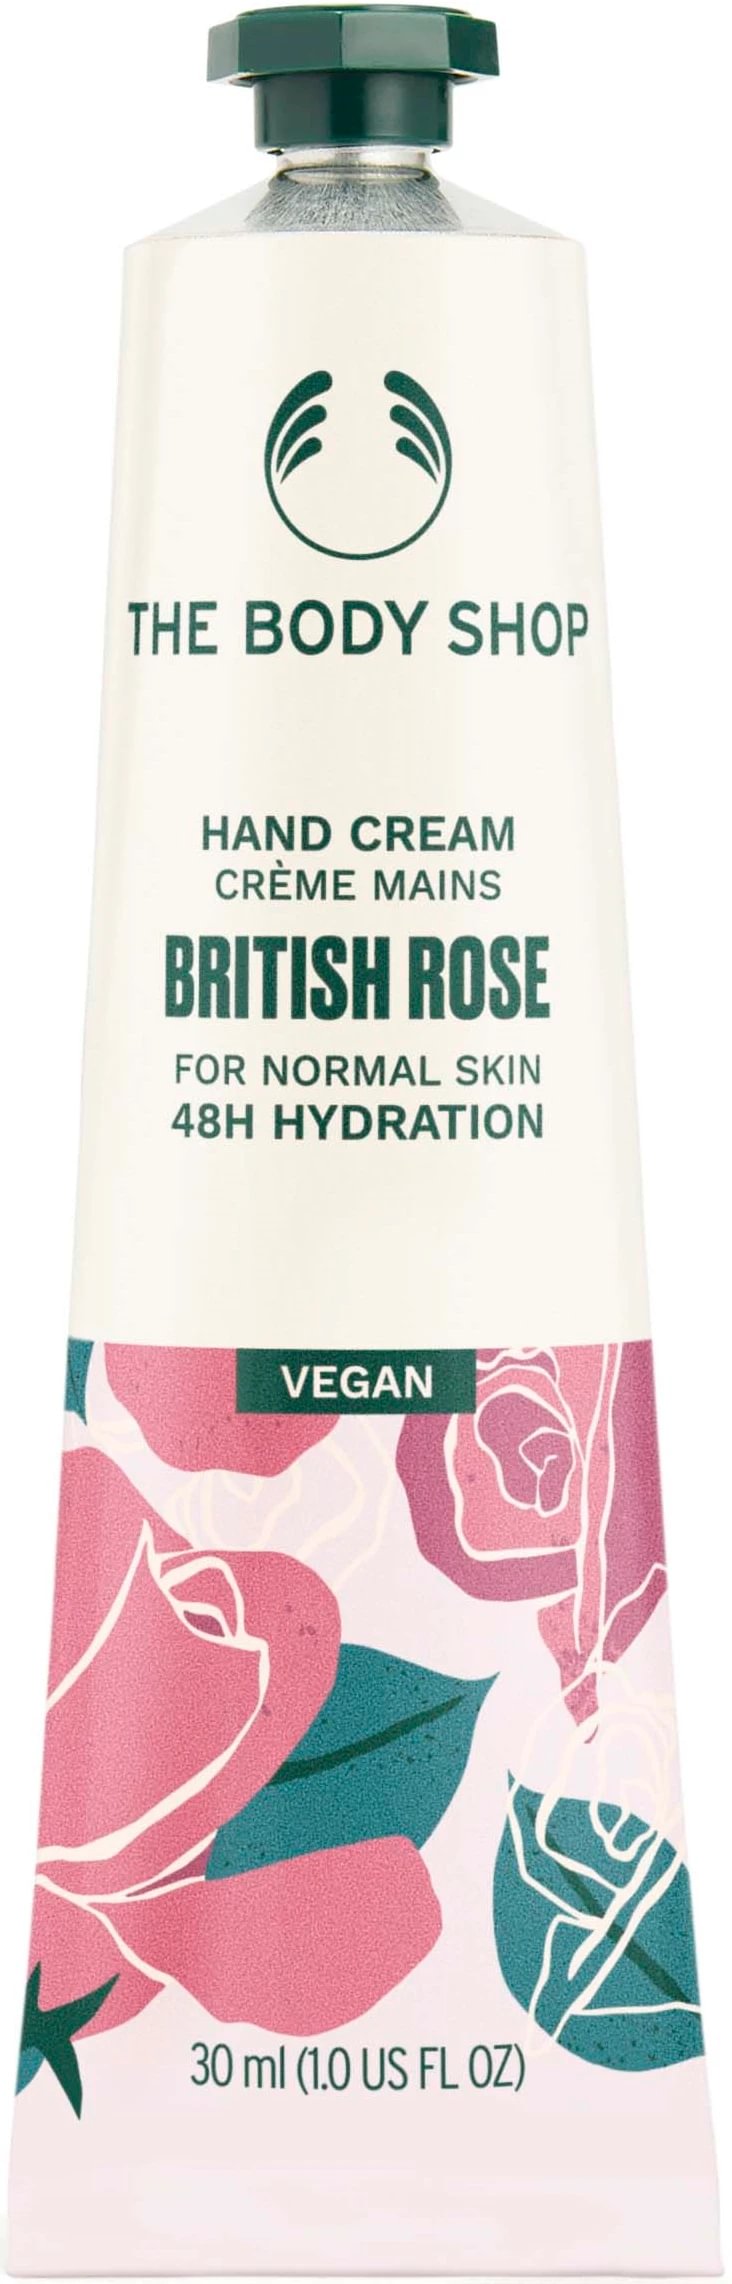 The Body Shop British Rose hand cream 30 ml